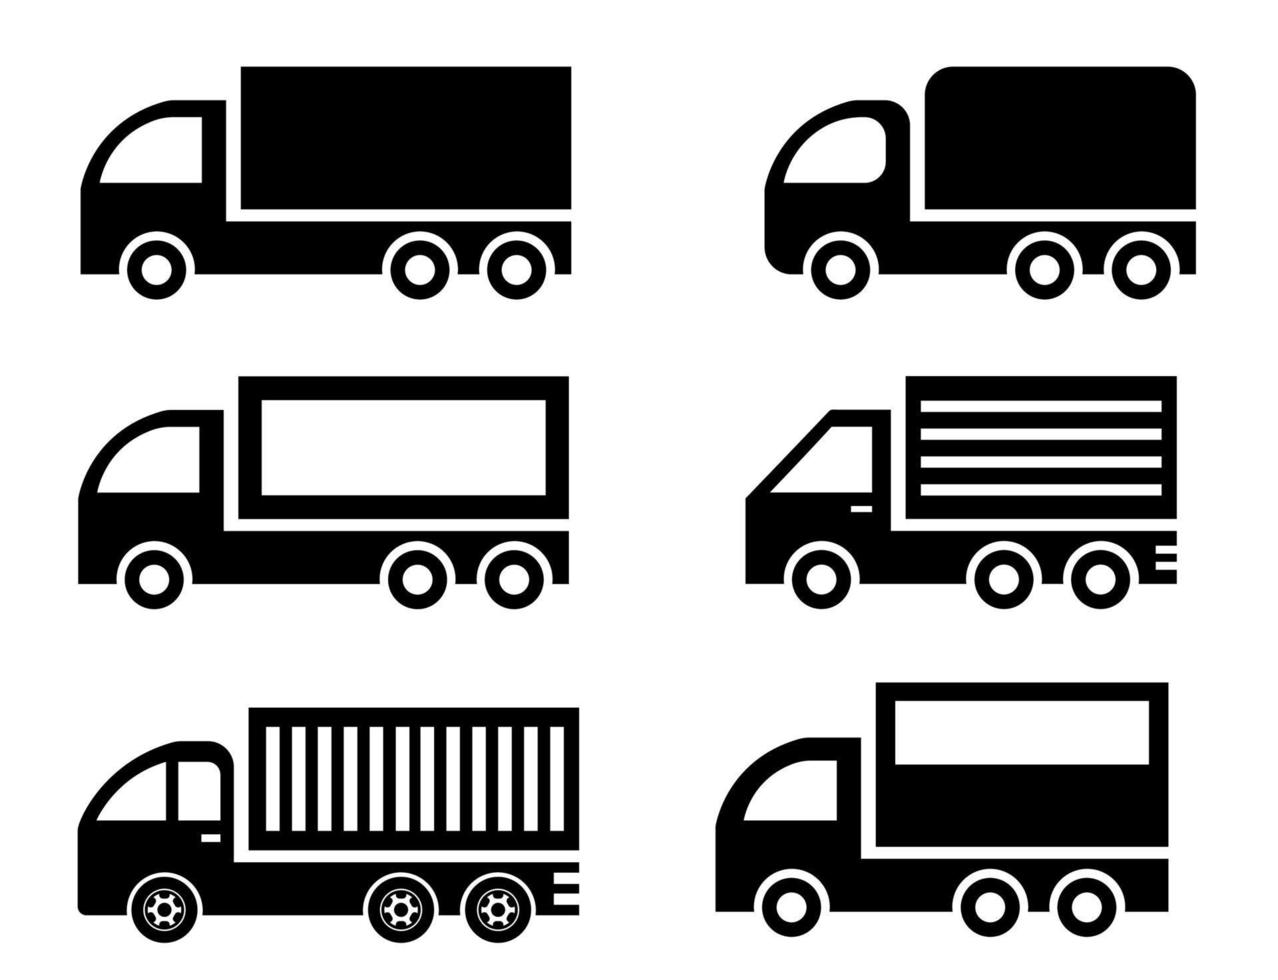 conjunto de ilustración de furgoneta en blanco y negro. grupo de coches de reparto. logotipo de vector de coche de carga. iconos de furgonetas de reparto.